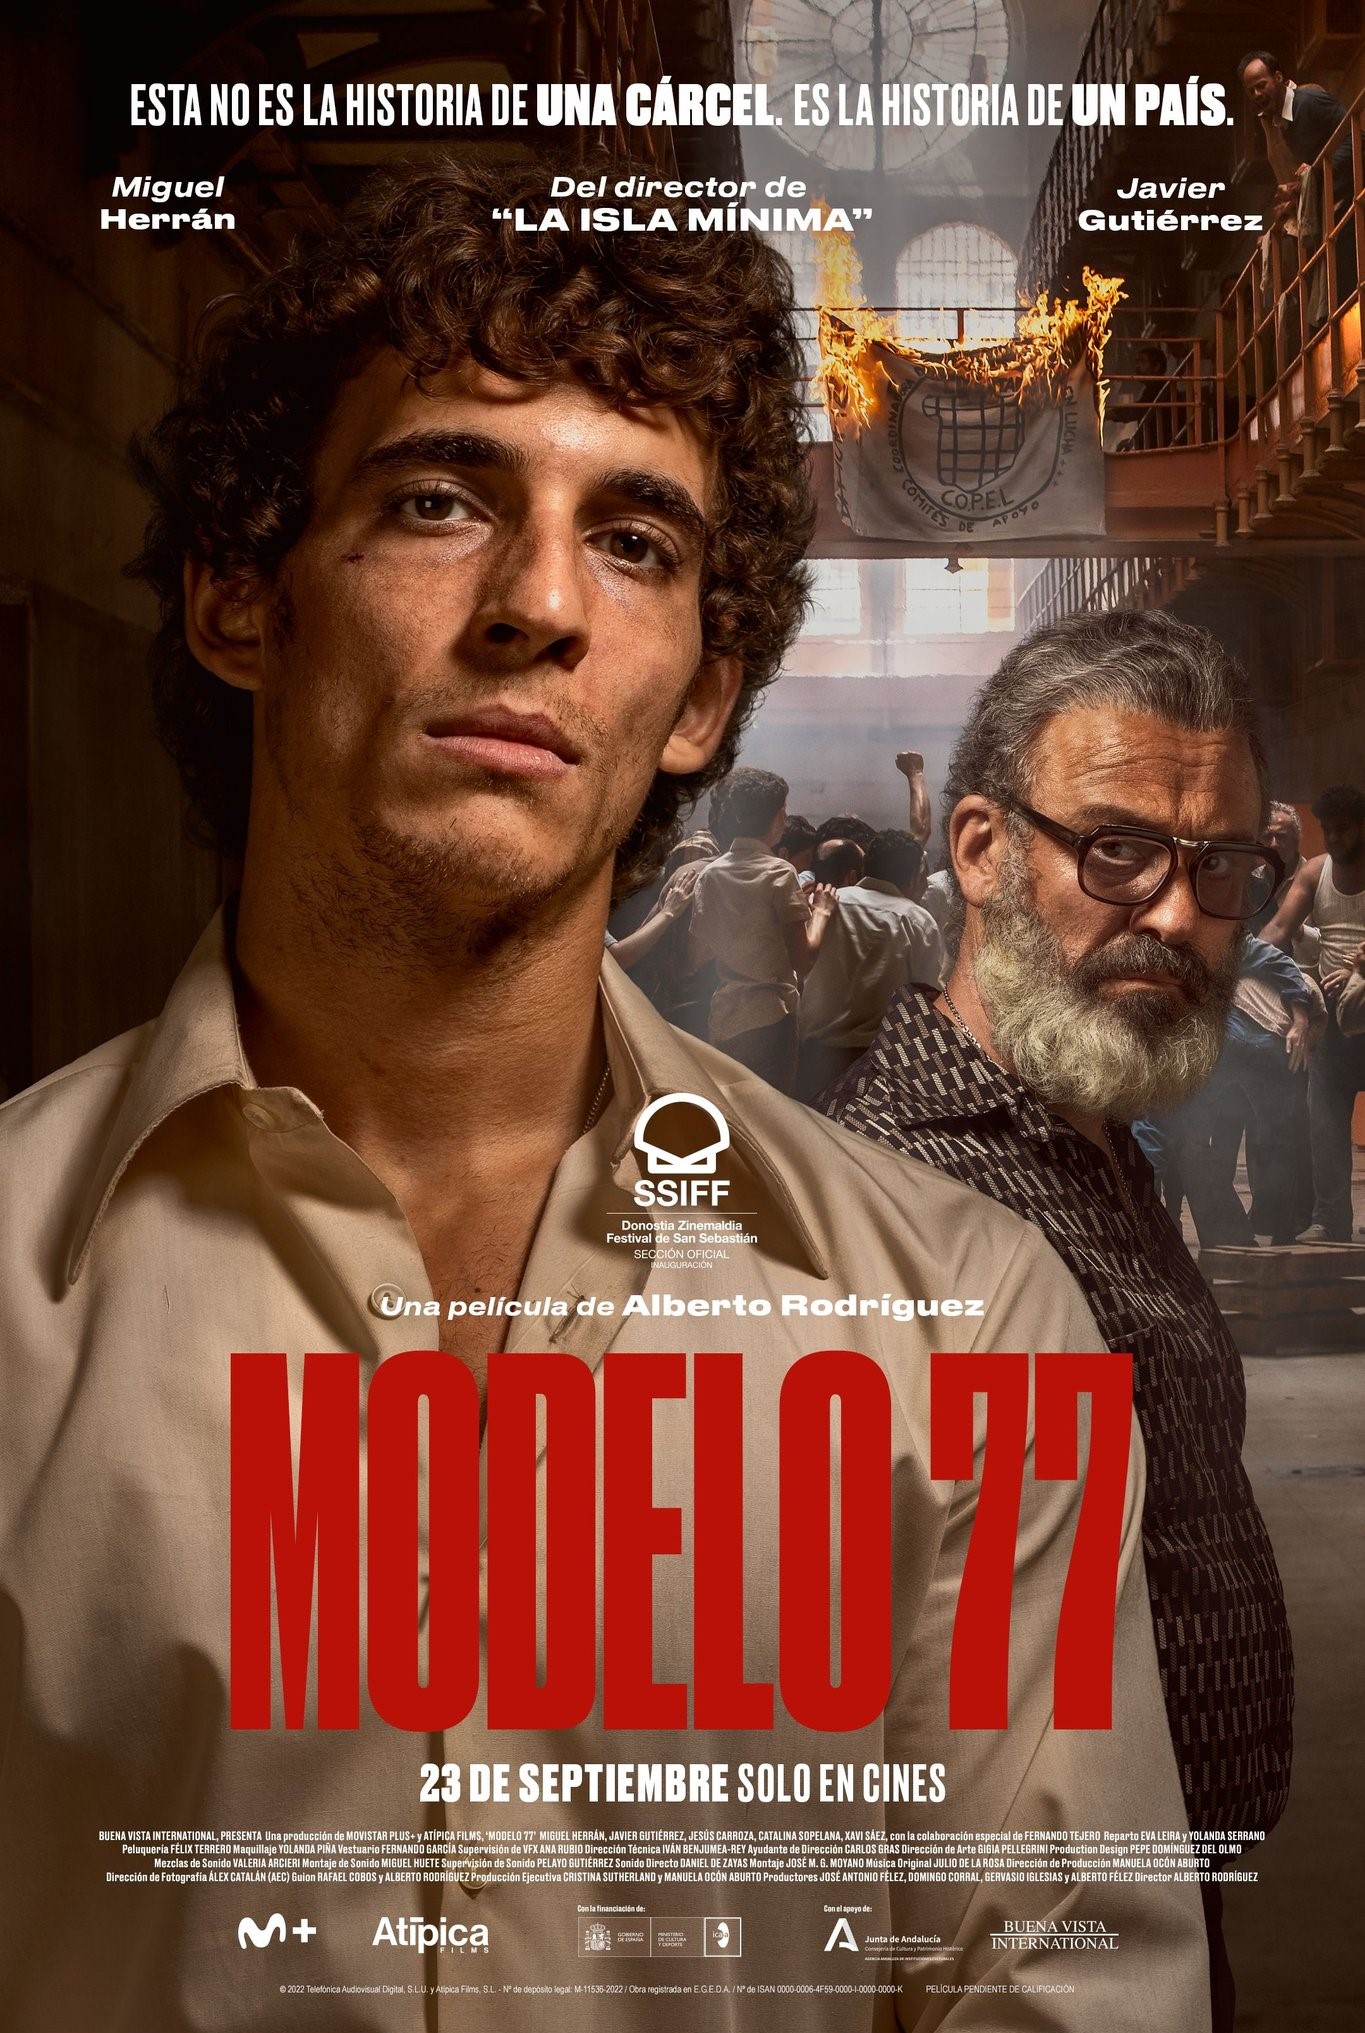 [NEWS] Il thriller Modelo 77 apre il Festival del cinema spagnolo di Roma